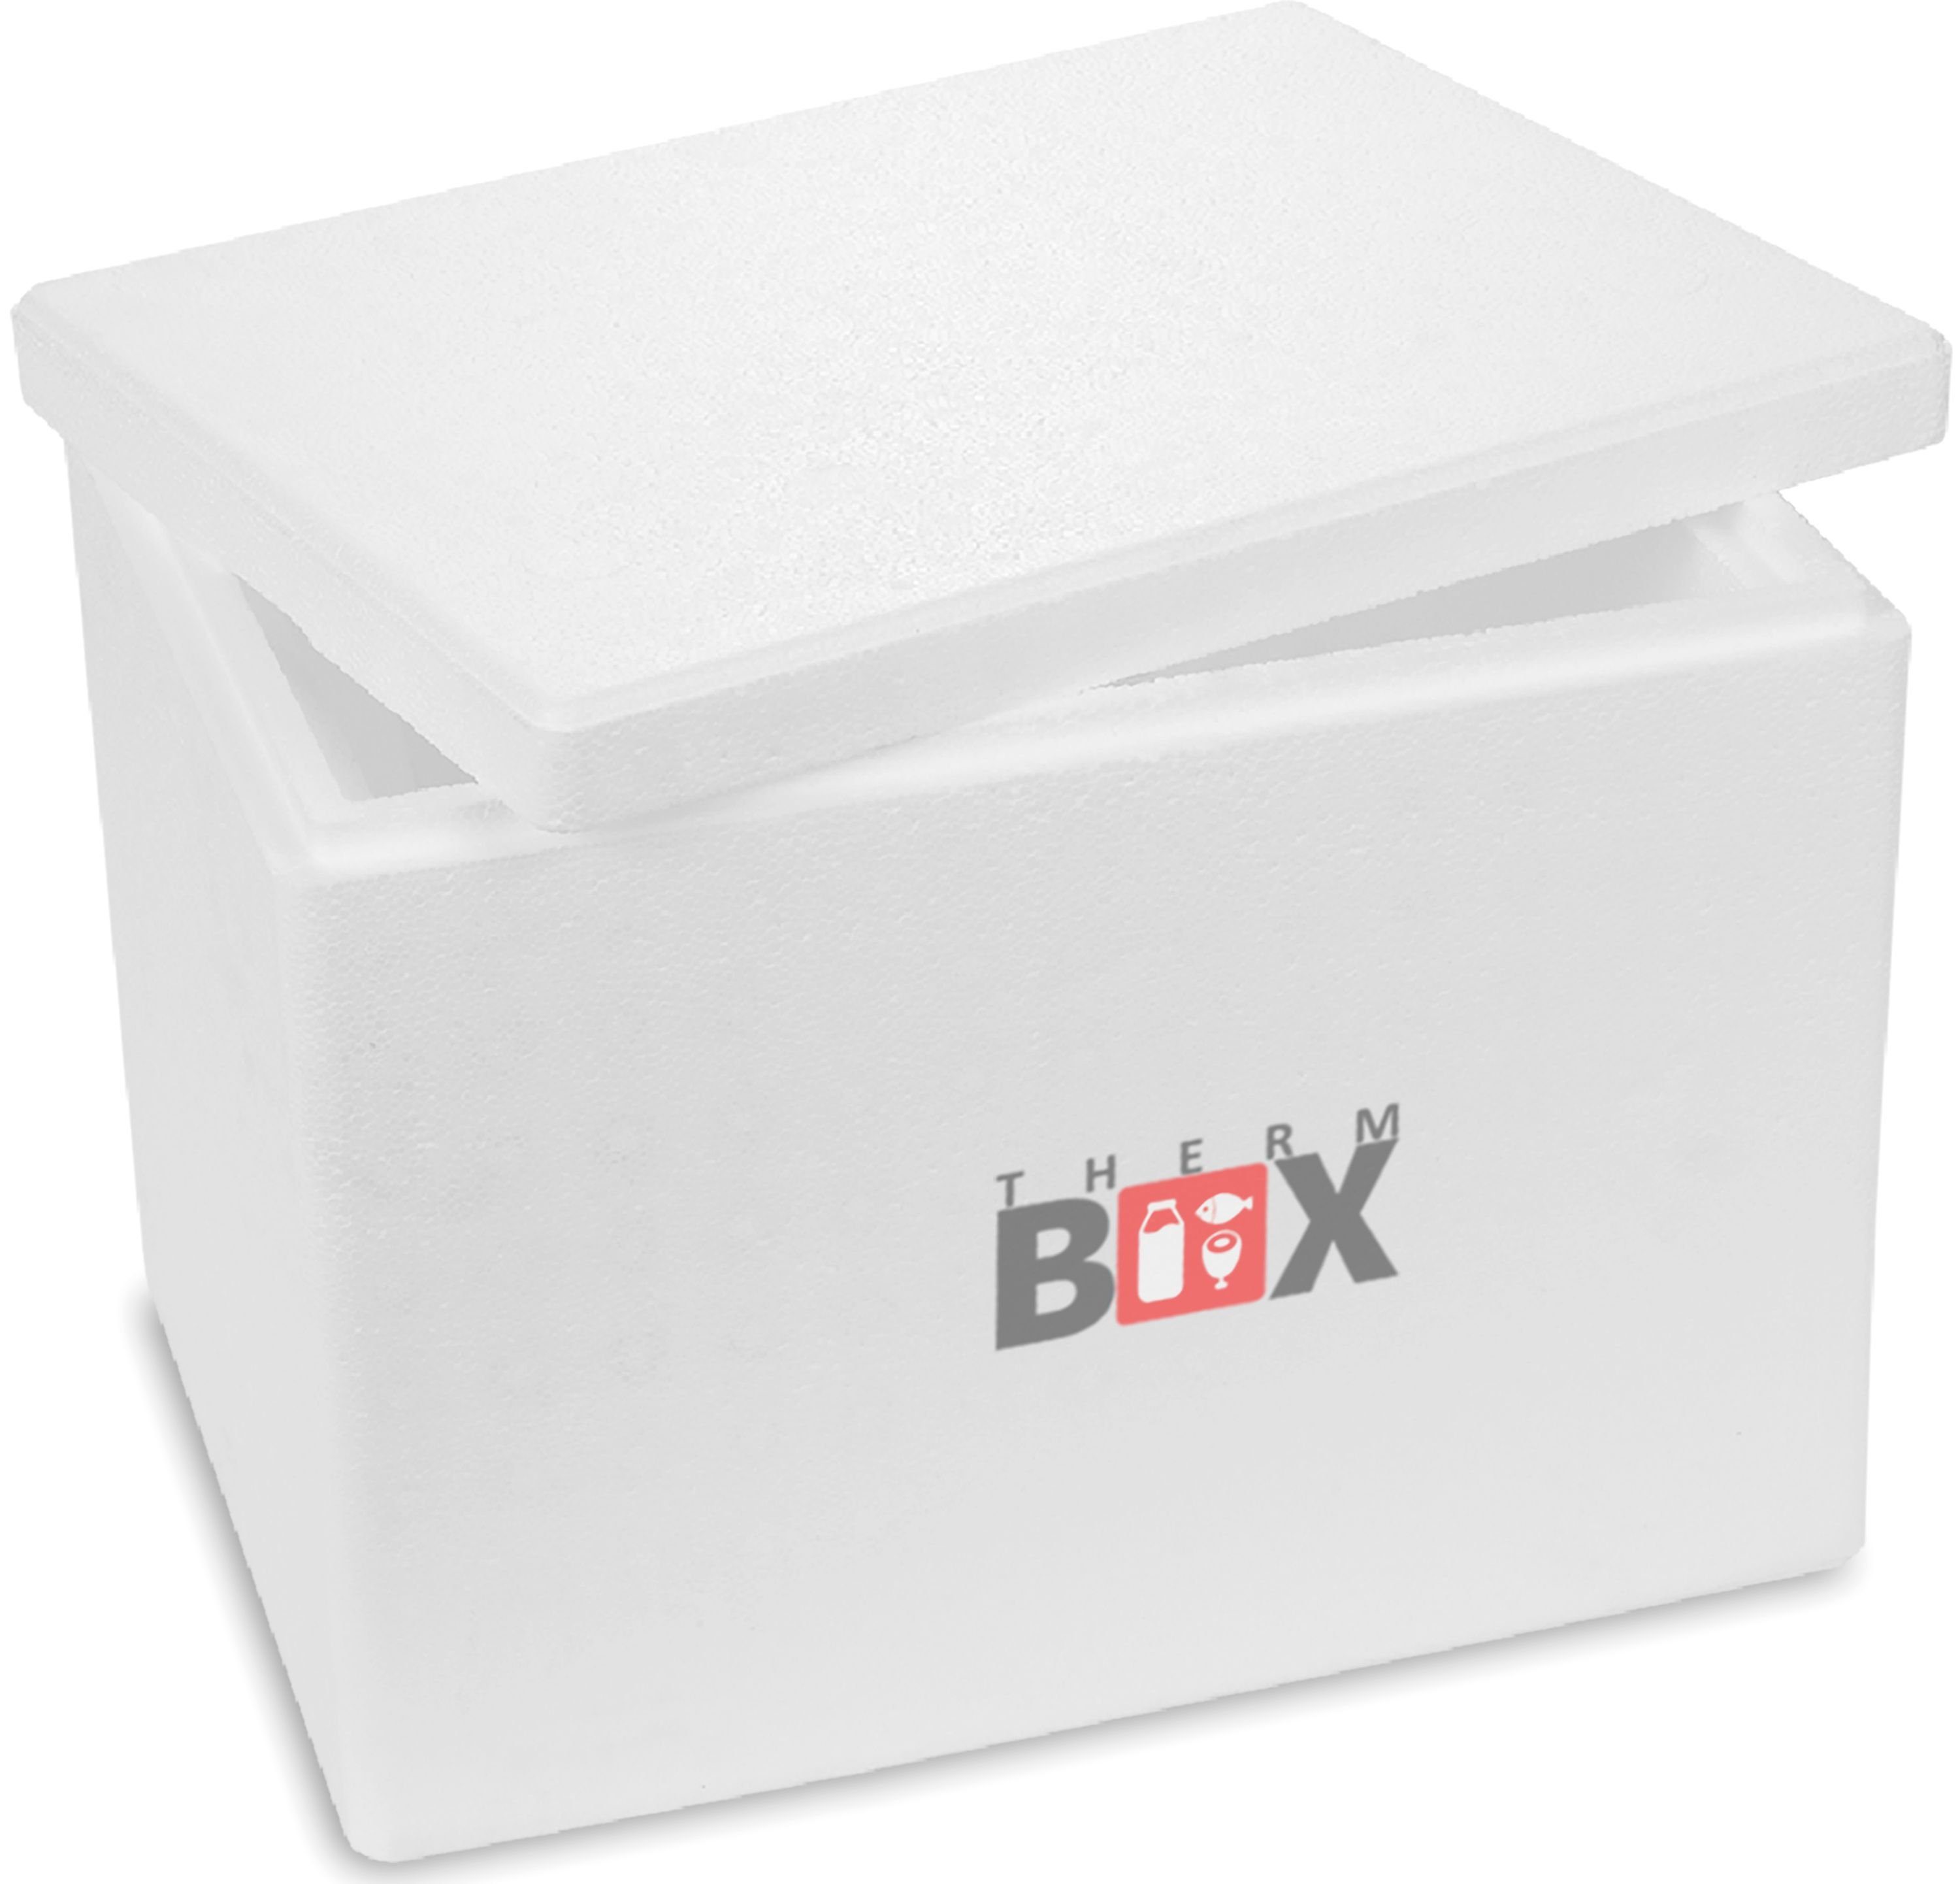 THERM-BOX Thermobehälter Styroporbox 19W Innen: 34x23x24cm Wand: 3cm 19,4L, Styropor-Verdichtet, (1, 0-tlg., Box mit Deckel im Karton), Isolierbox Thermobox Kühlbox Warmhaltebox Wiederverwendbar